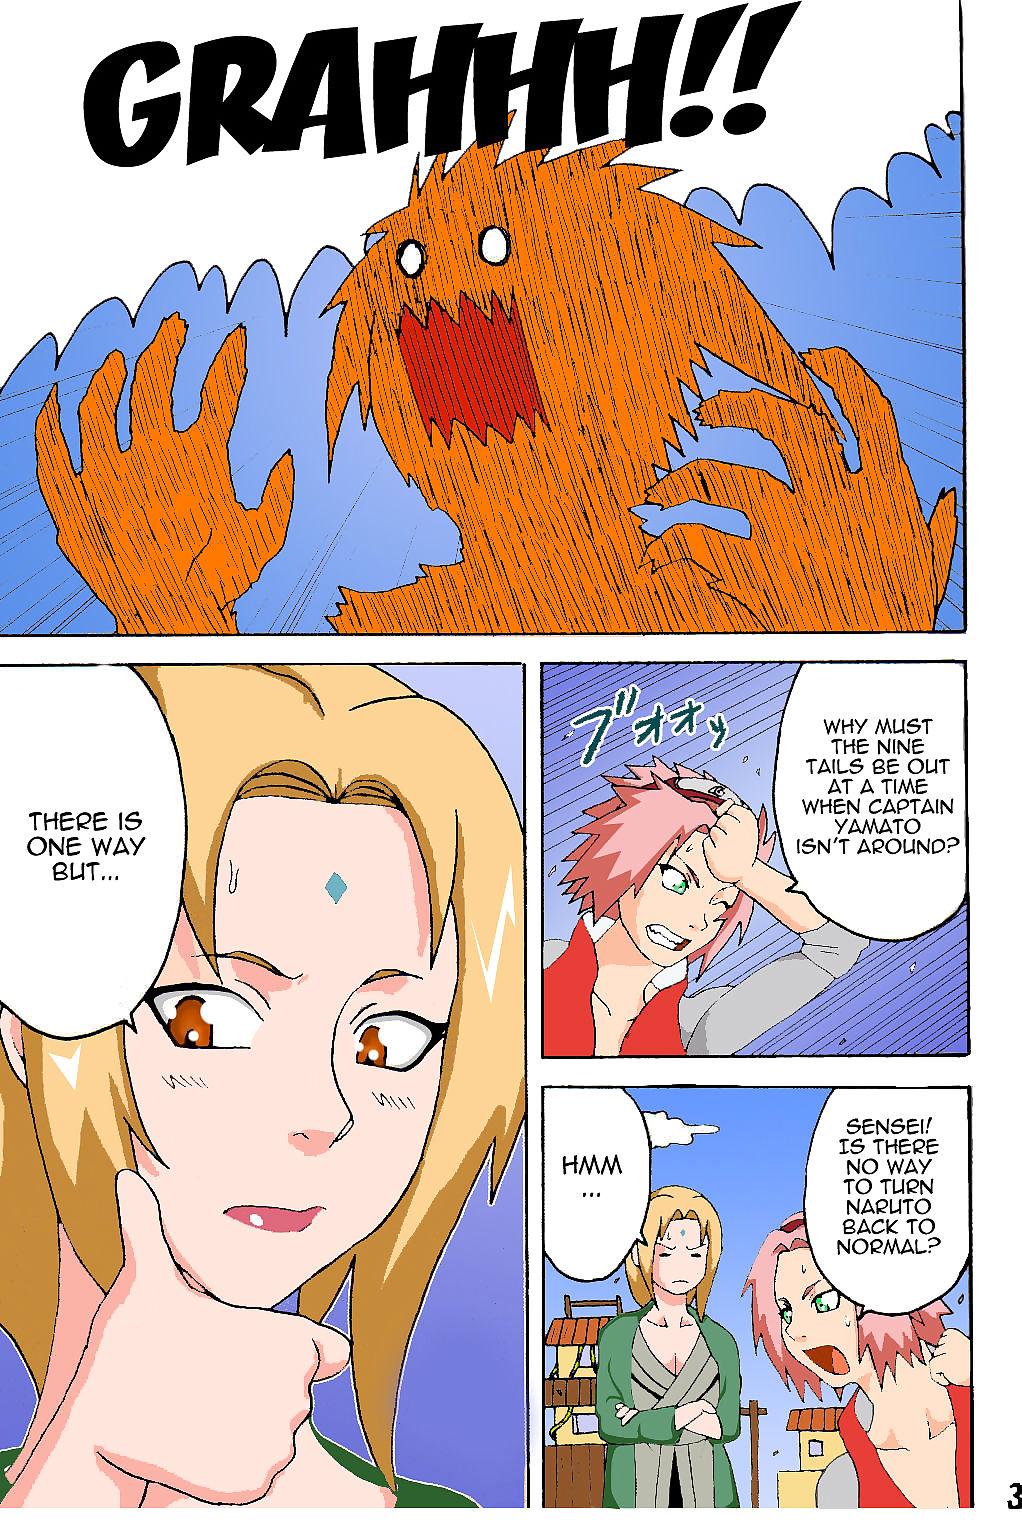 Naruto tsunade’s sexual la terapia page 1